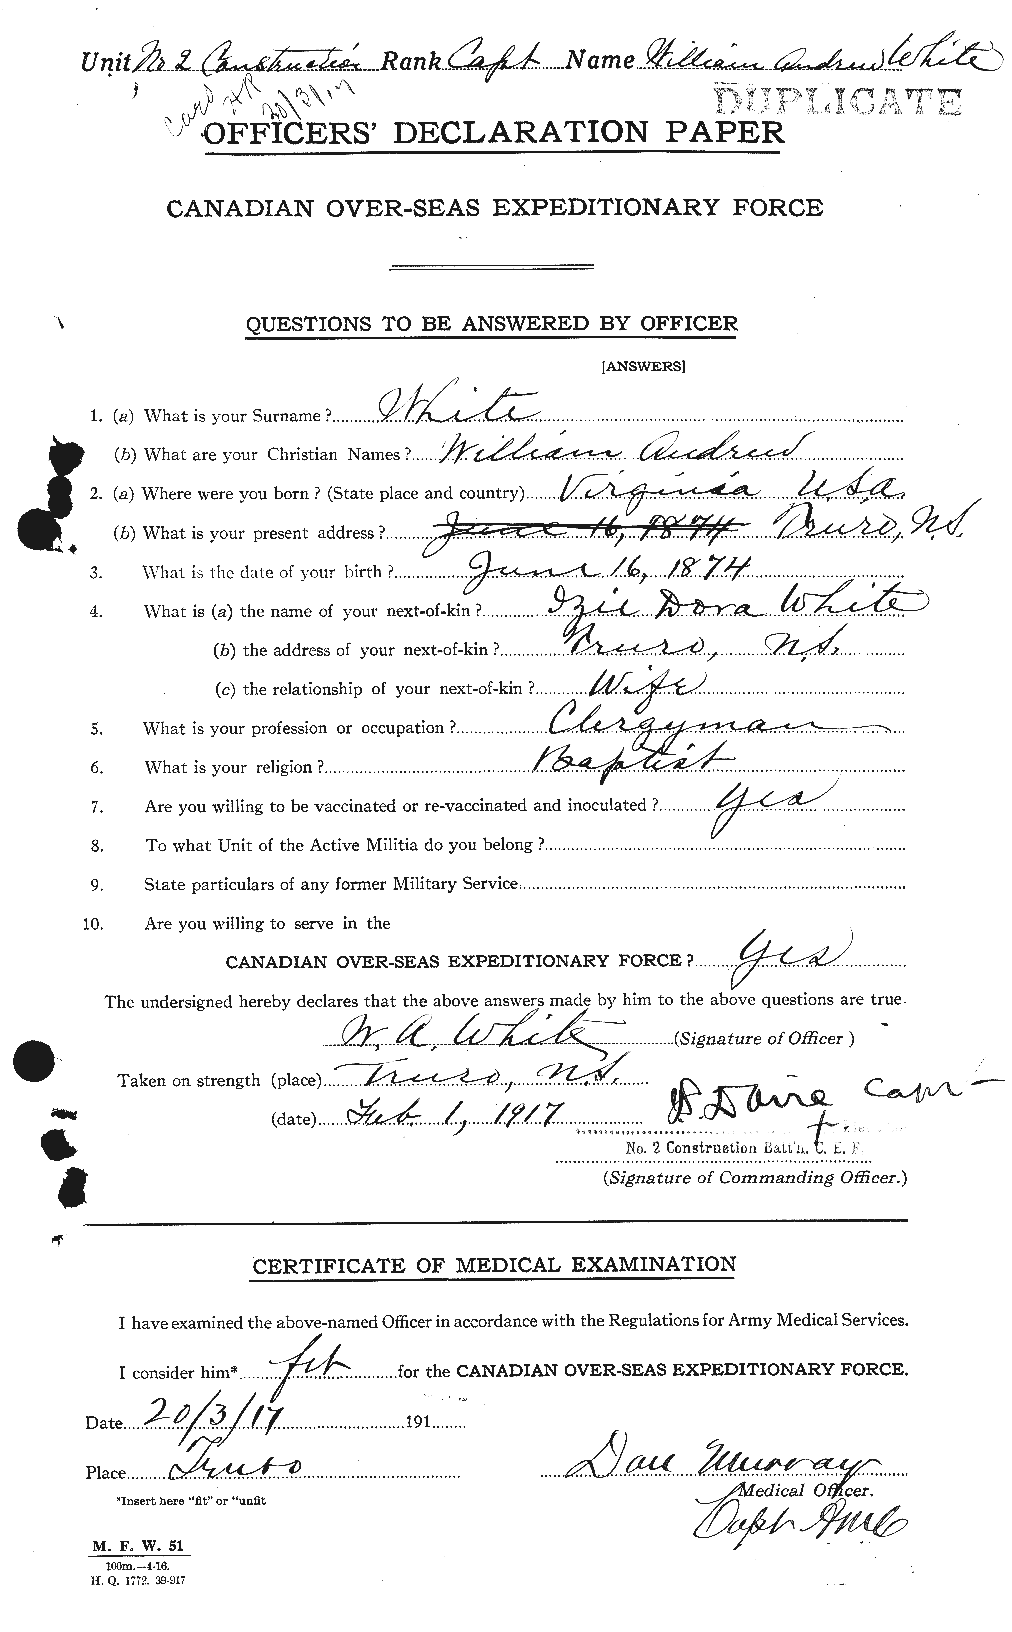 Dossiers du Personnel de la Première Guerre mondiale - CEC 668984a